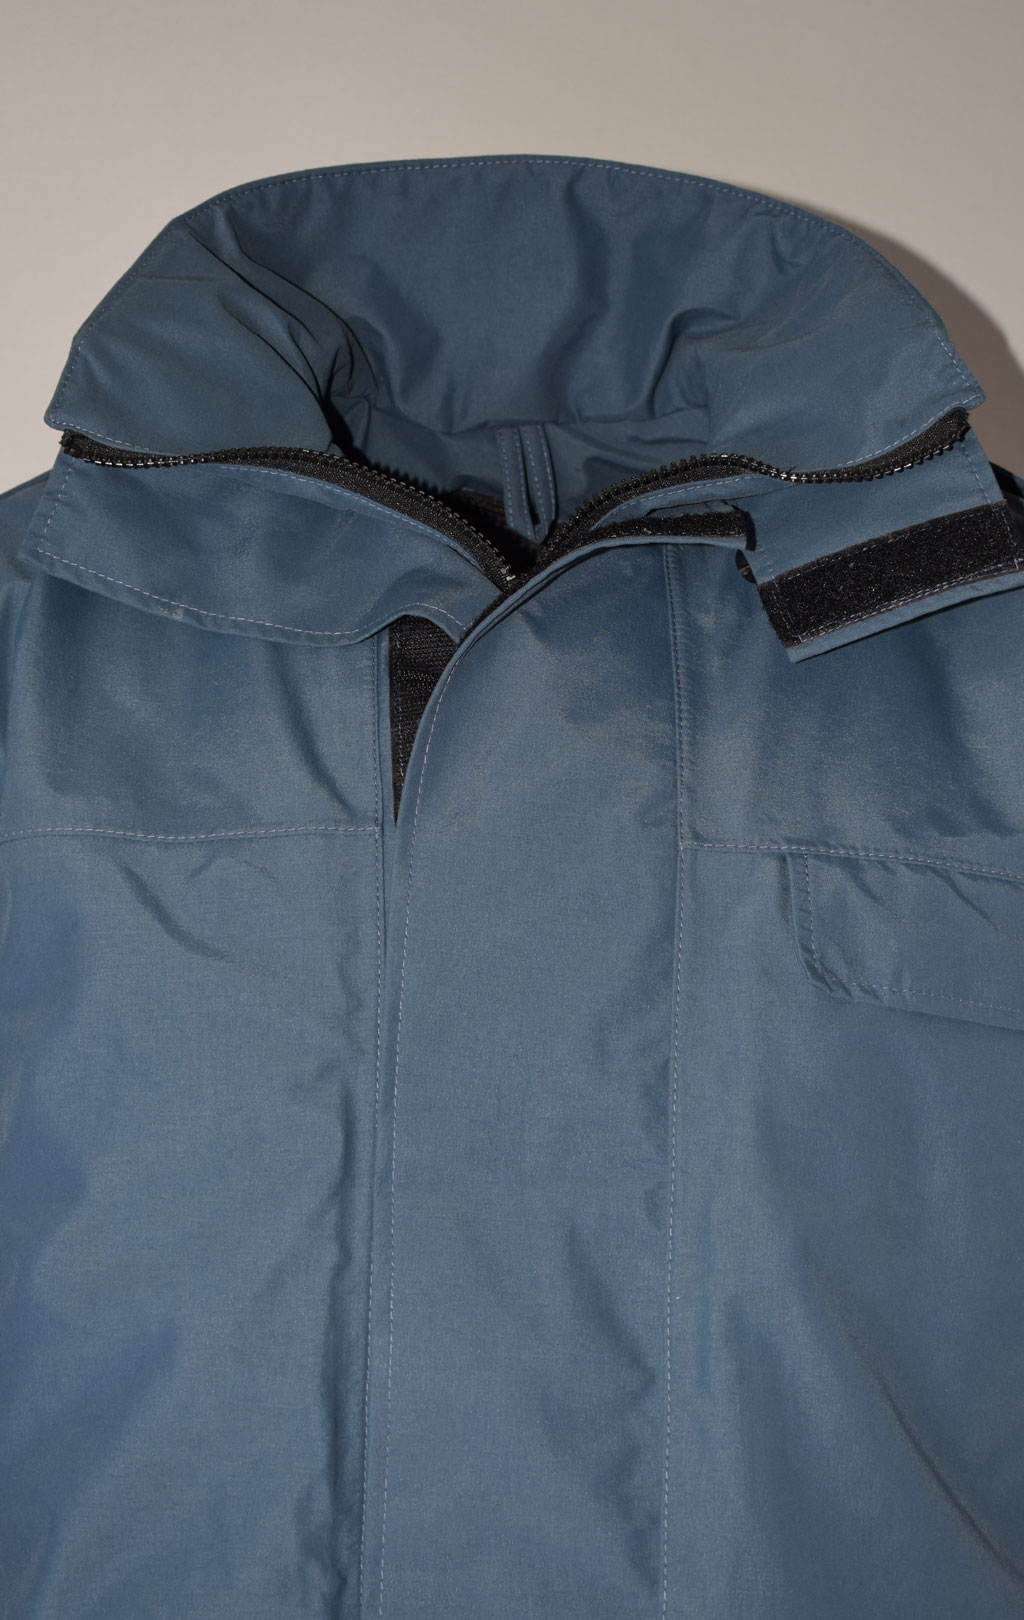 Куртка непромокаемая Gore-Tex RAF Gore-Tex с подстёжкой navy б/у Англия